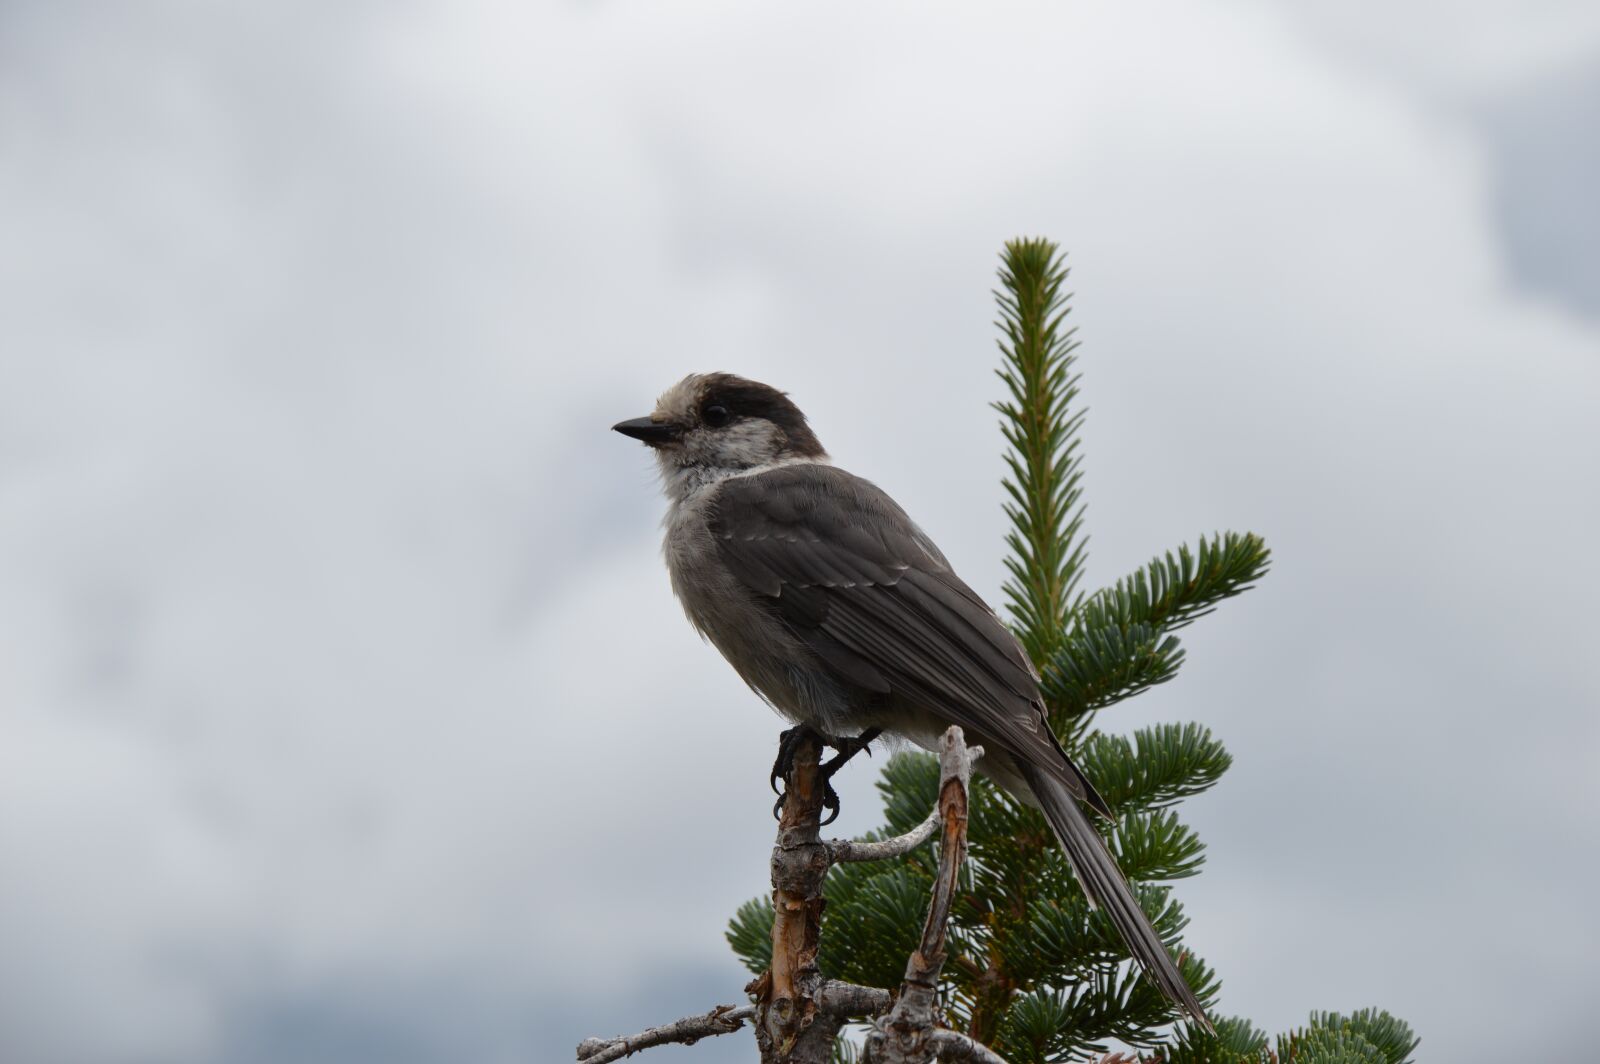 Nikon D3200 sample photo. Bird, canada, nature photography